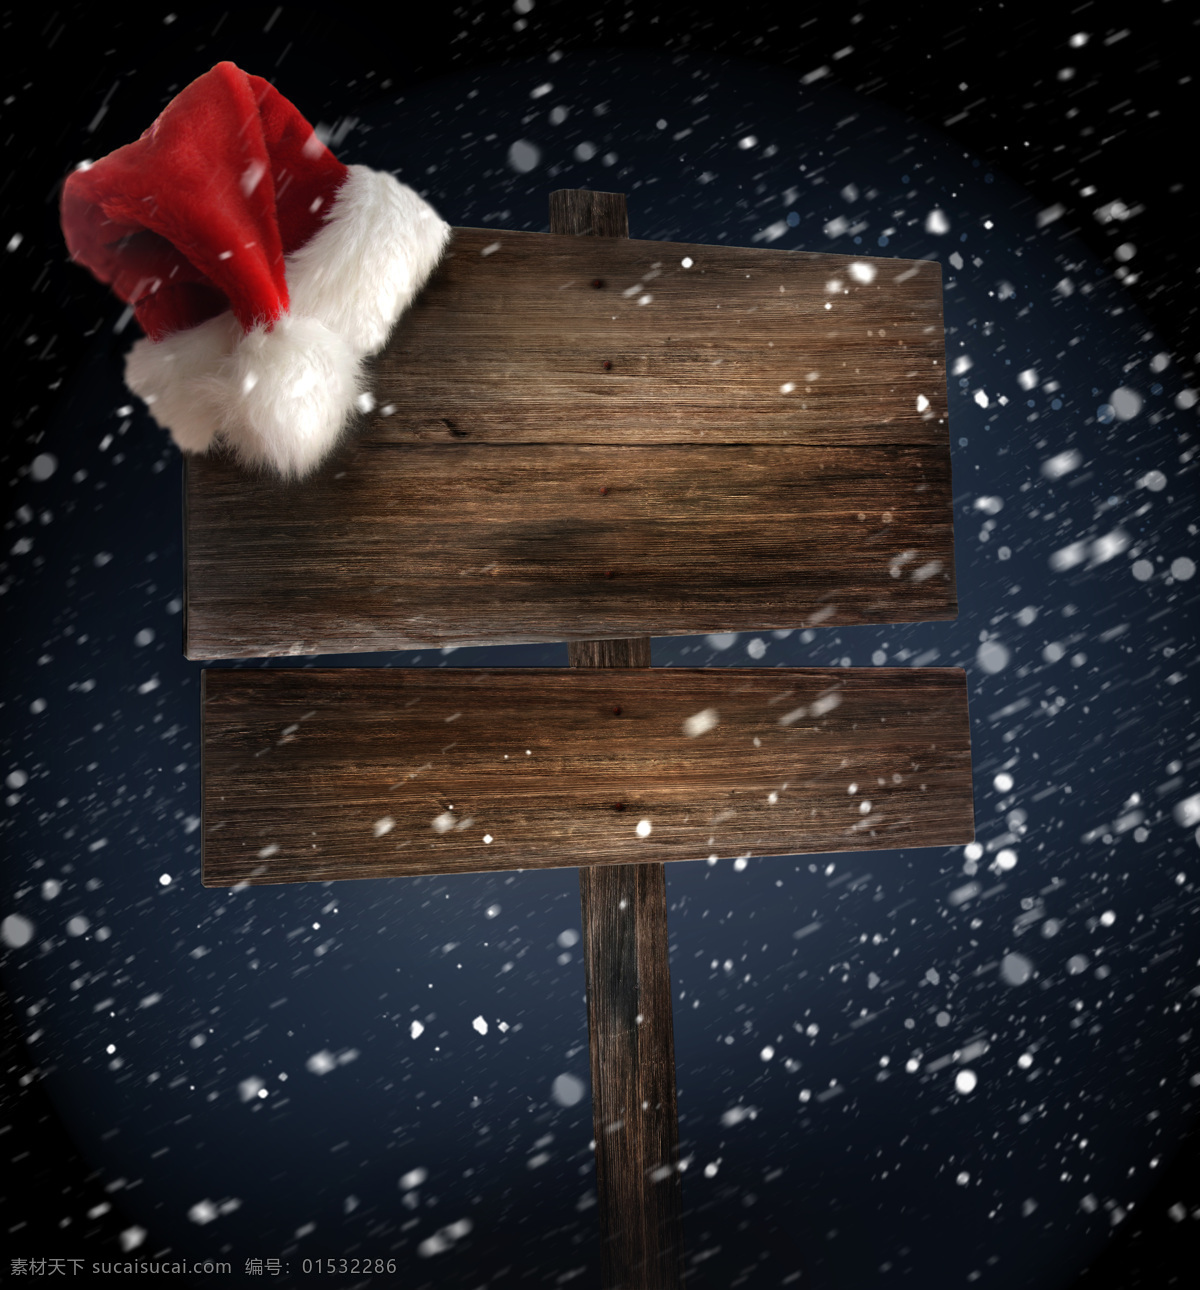 雪花 中 木板 圣诞帽 圣诞节 节日素材 节日庆典 生活百科